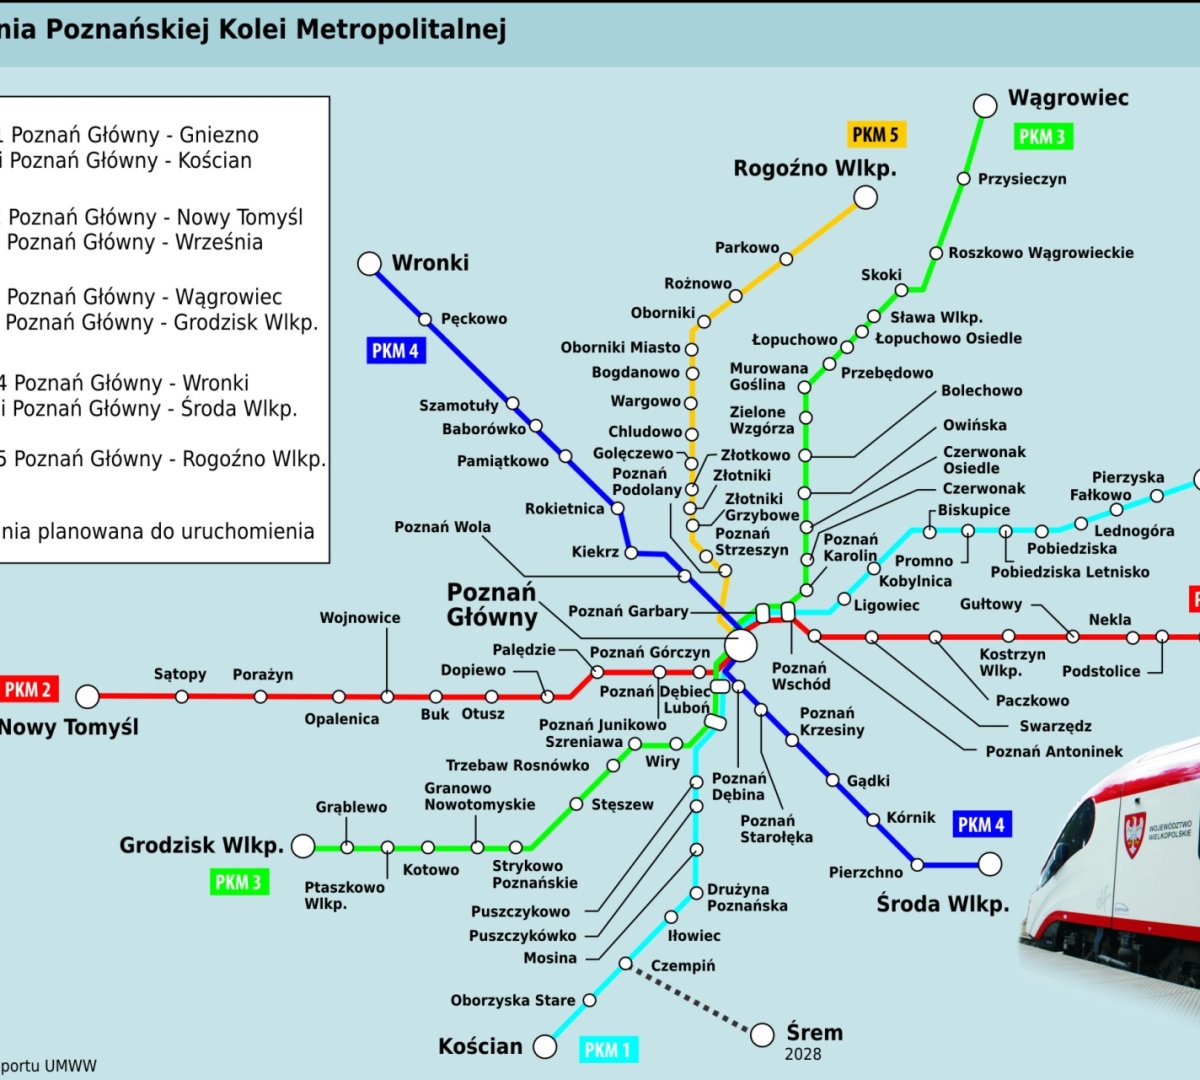 Infografika prezentująca zasięg działania Poznańskiej Kolei Metropolitalnej